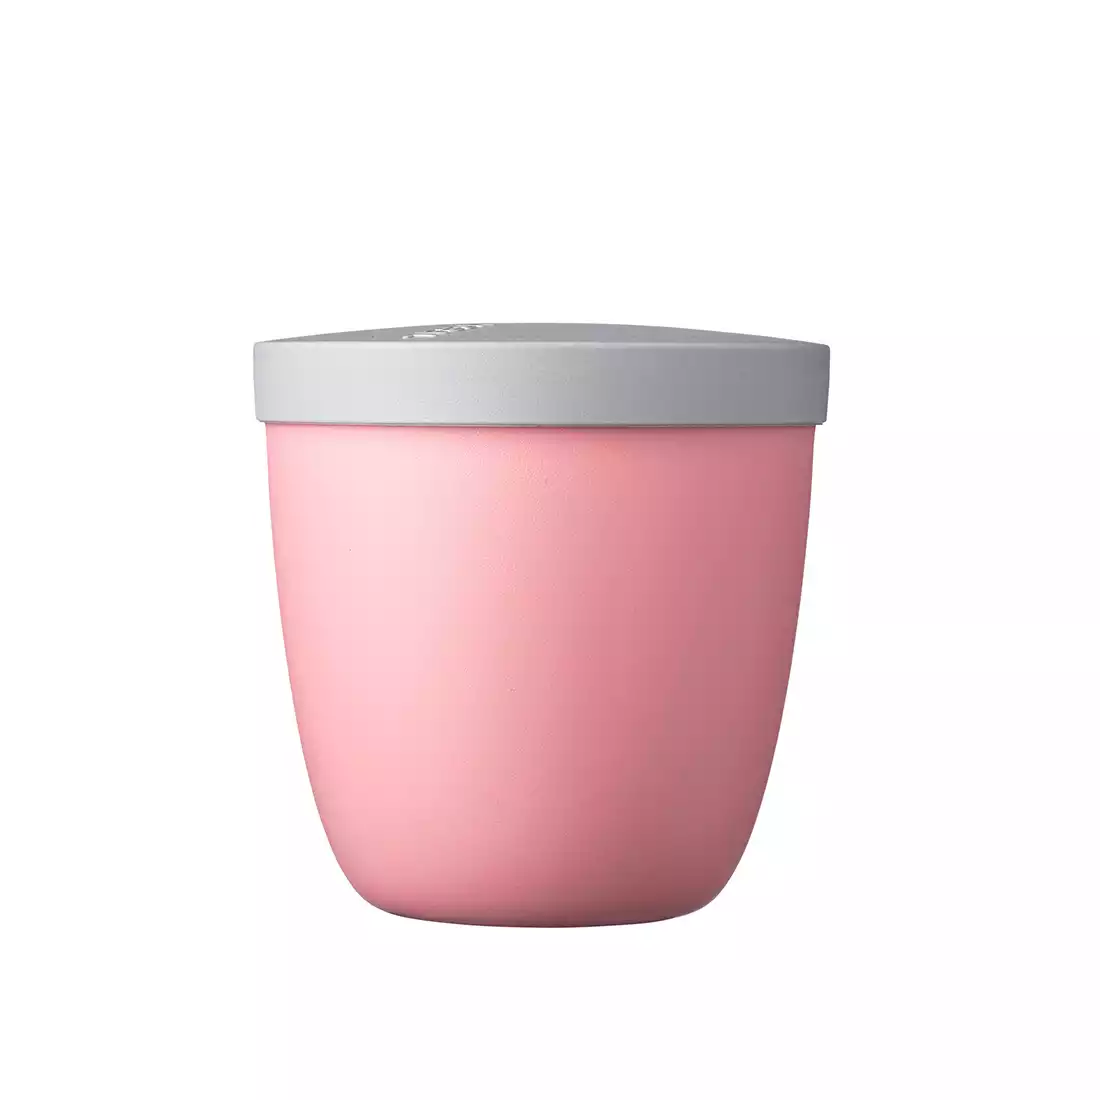 Mepal Ellipse snack pot - 500ml Nordic Pink, růžový